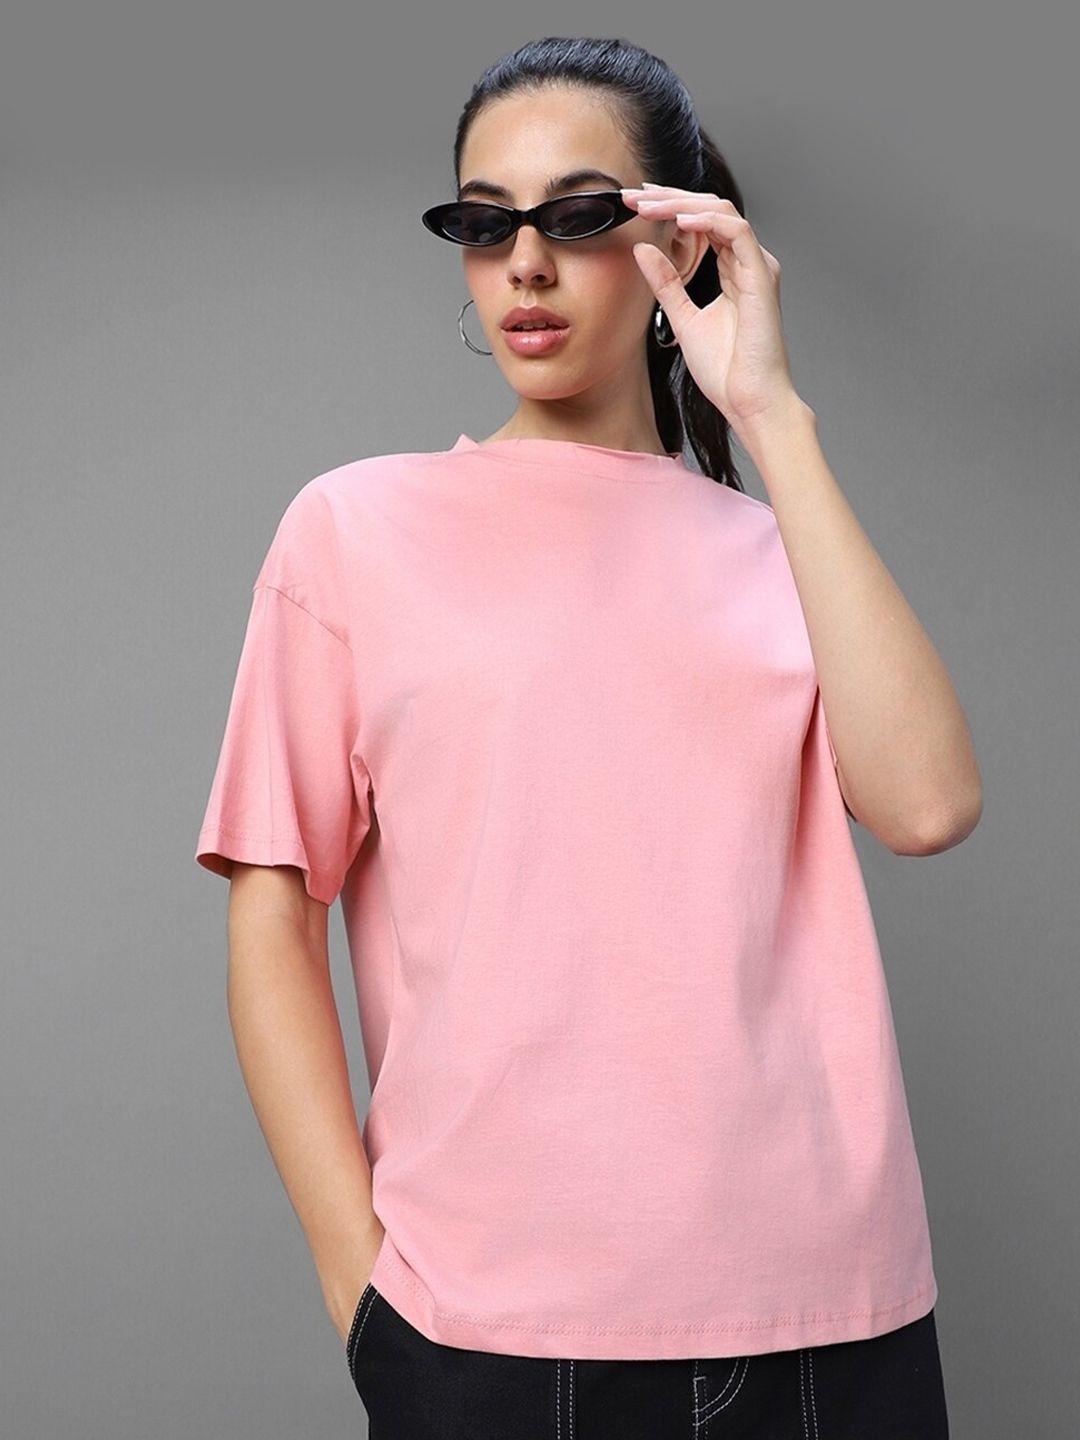 bewakoof women pink t-shirt